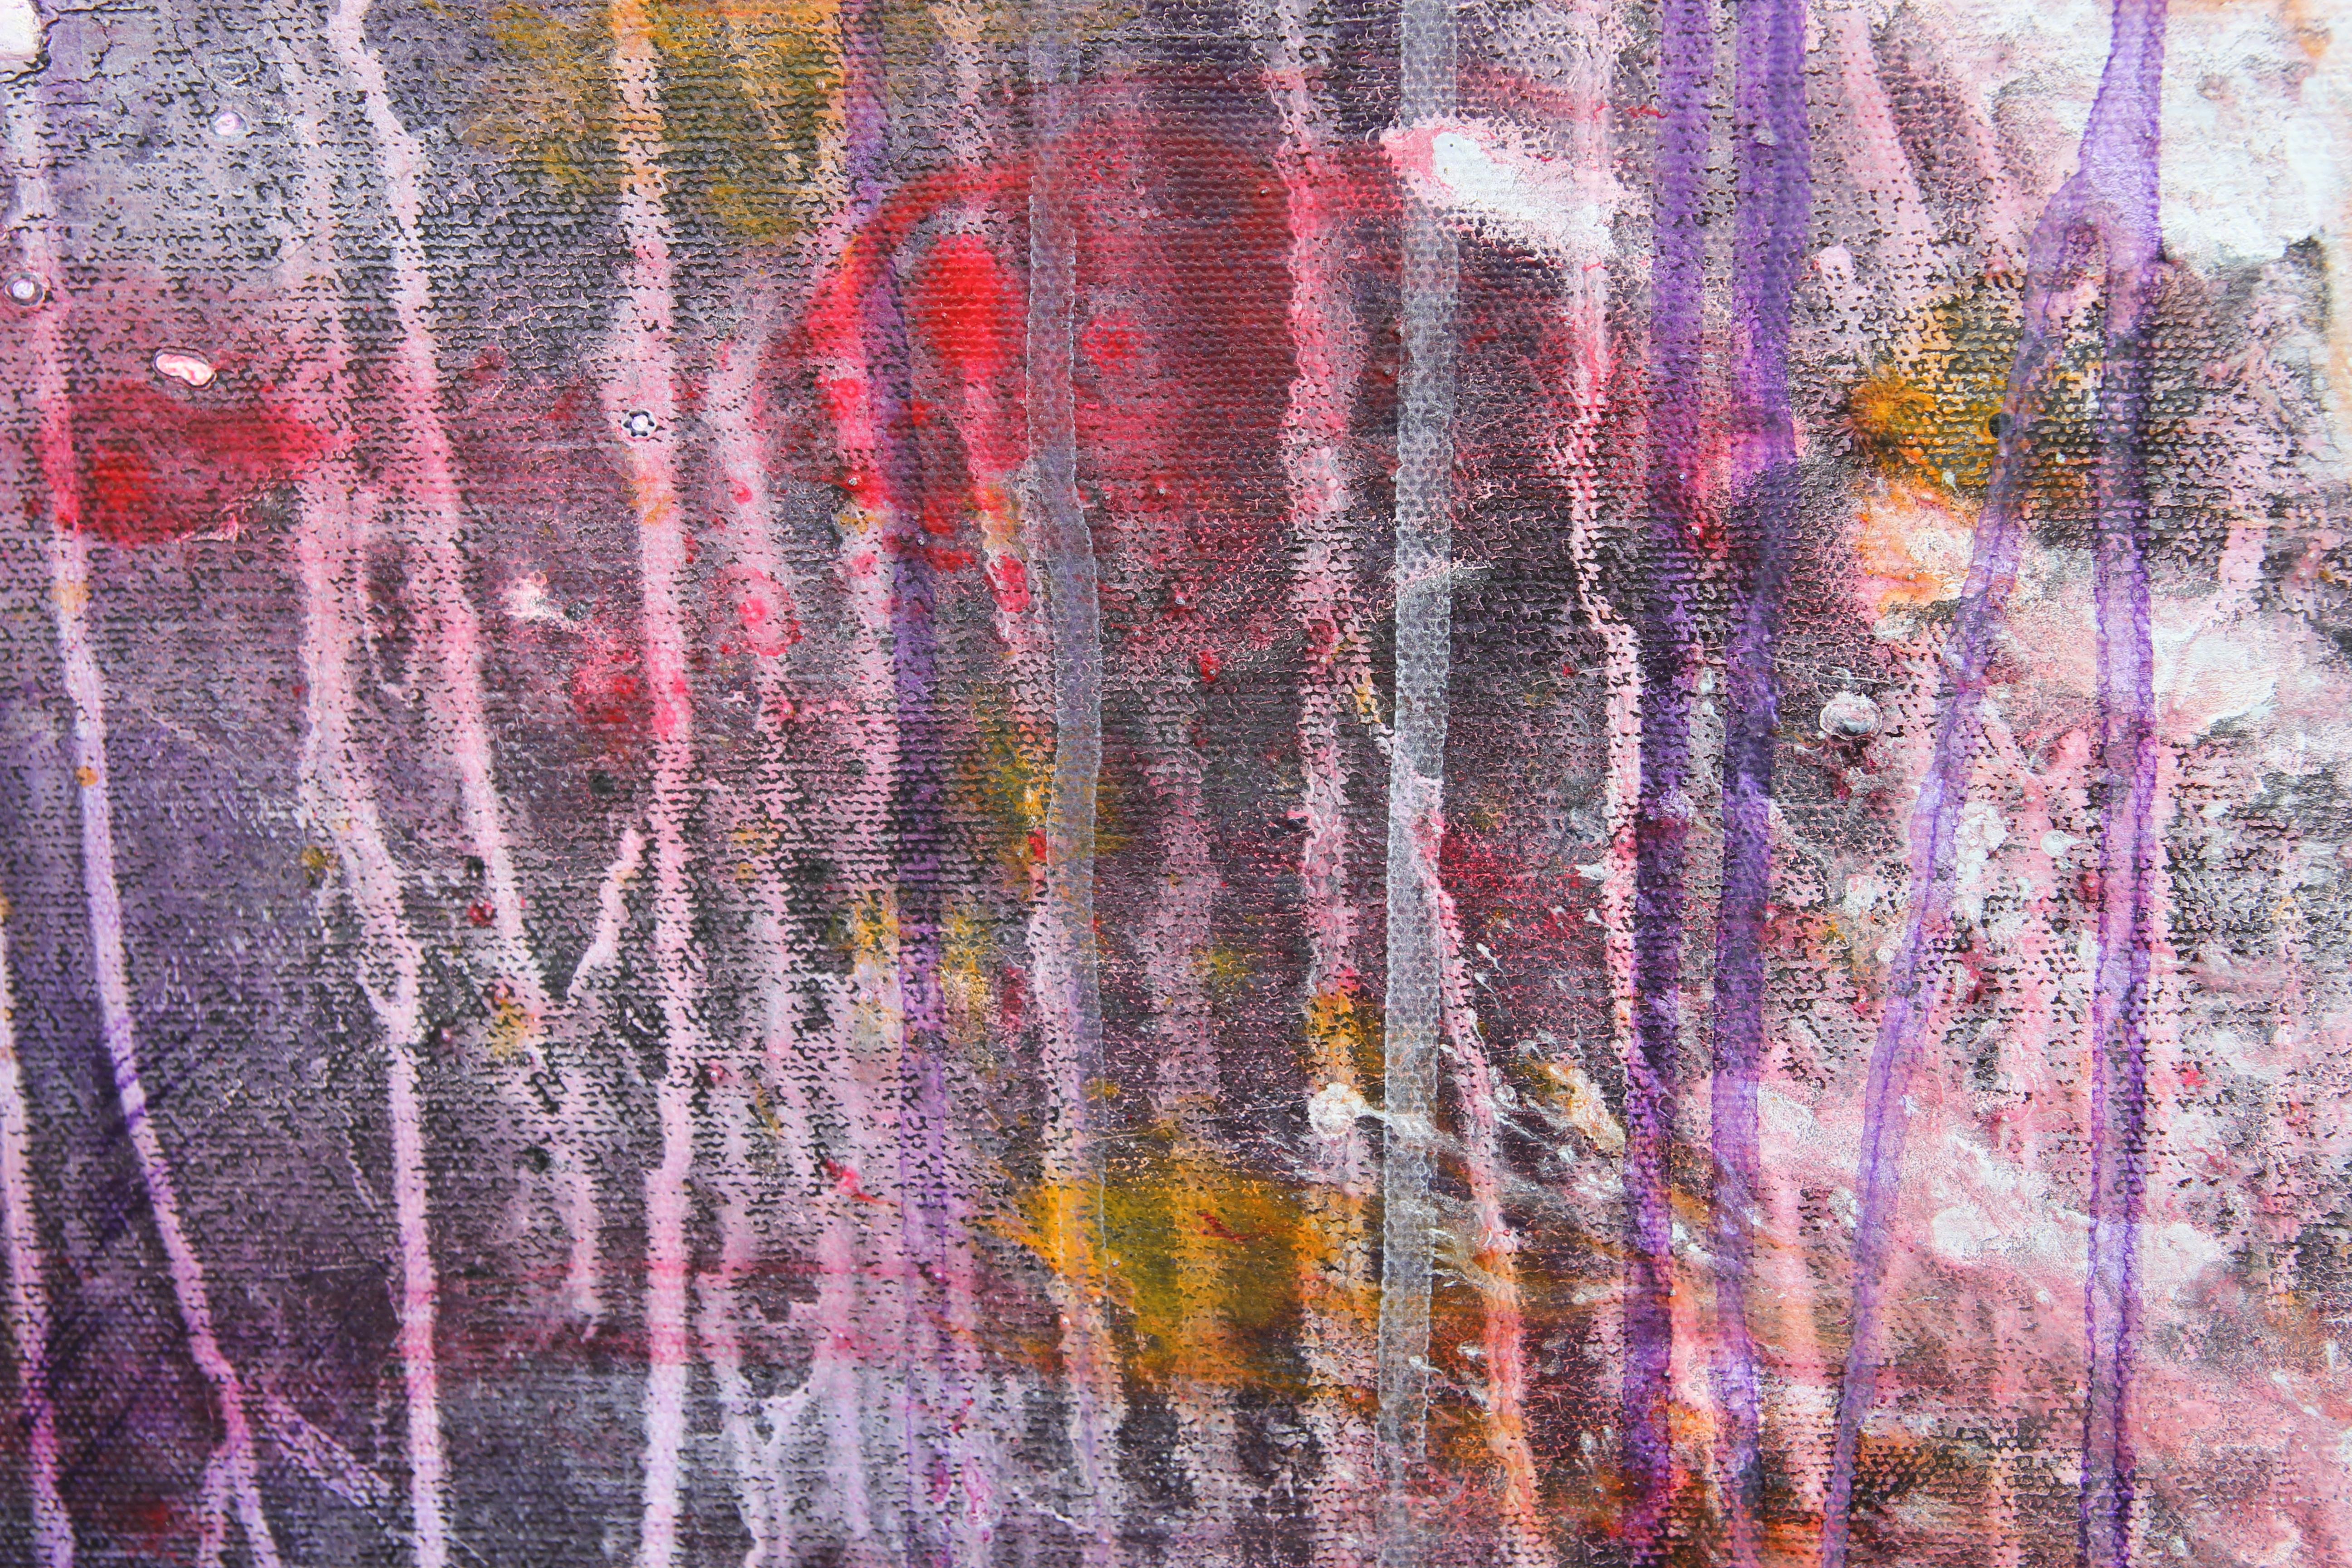 Großes modernes abstraktes expressionistisches Gemälde, das von Mark Rothkos Farbfeldgemälden beeinflusst ist und die Farben Lila, Rot und Gelb enthält.

Biografie des Künstlers:
Karen Lastre wurde 1940 in St. Paul, MN, geboren. 1965 zog sie nach